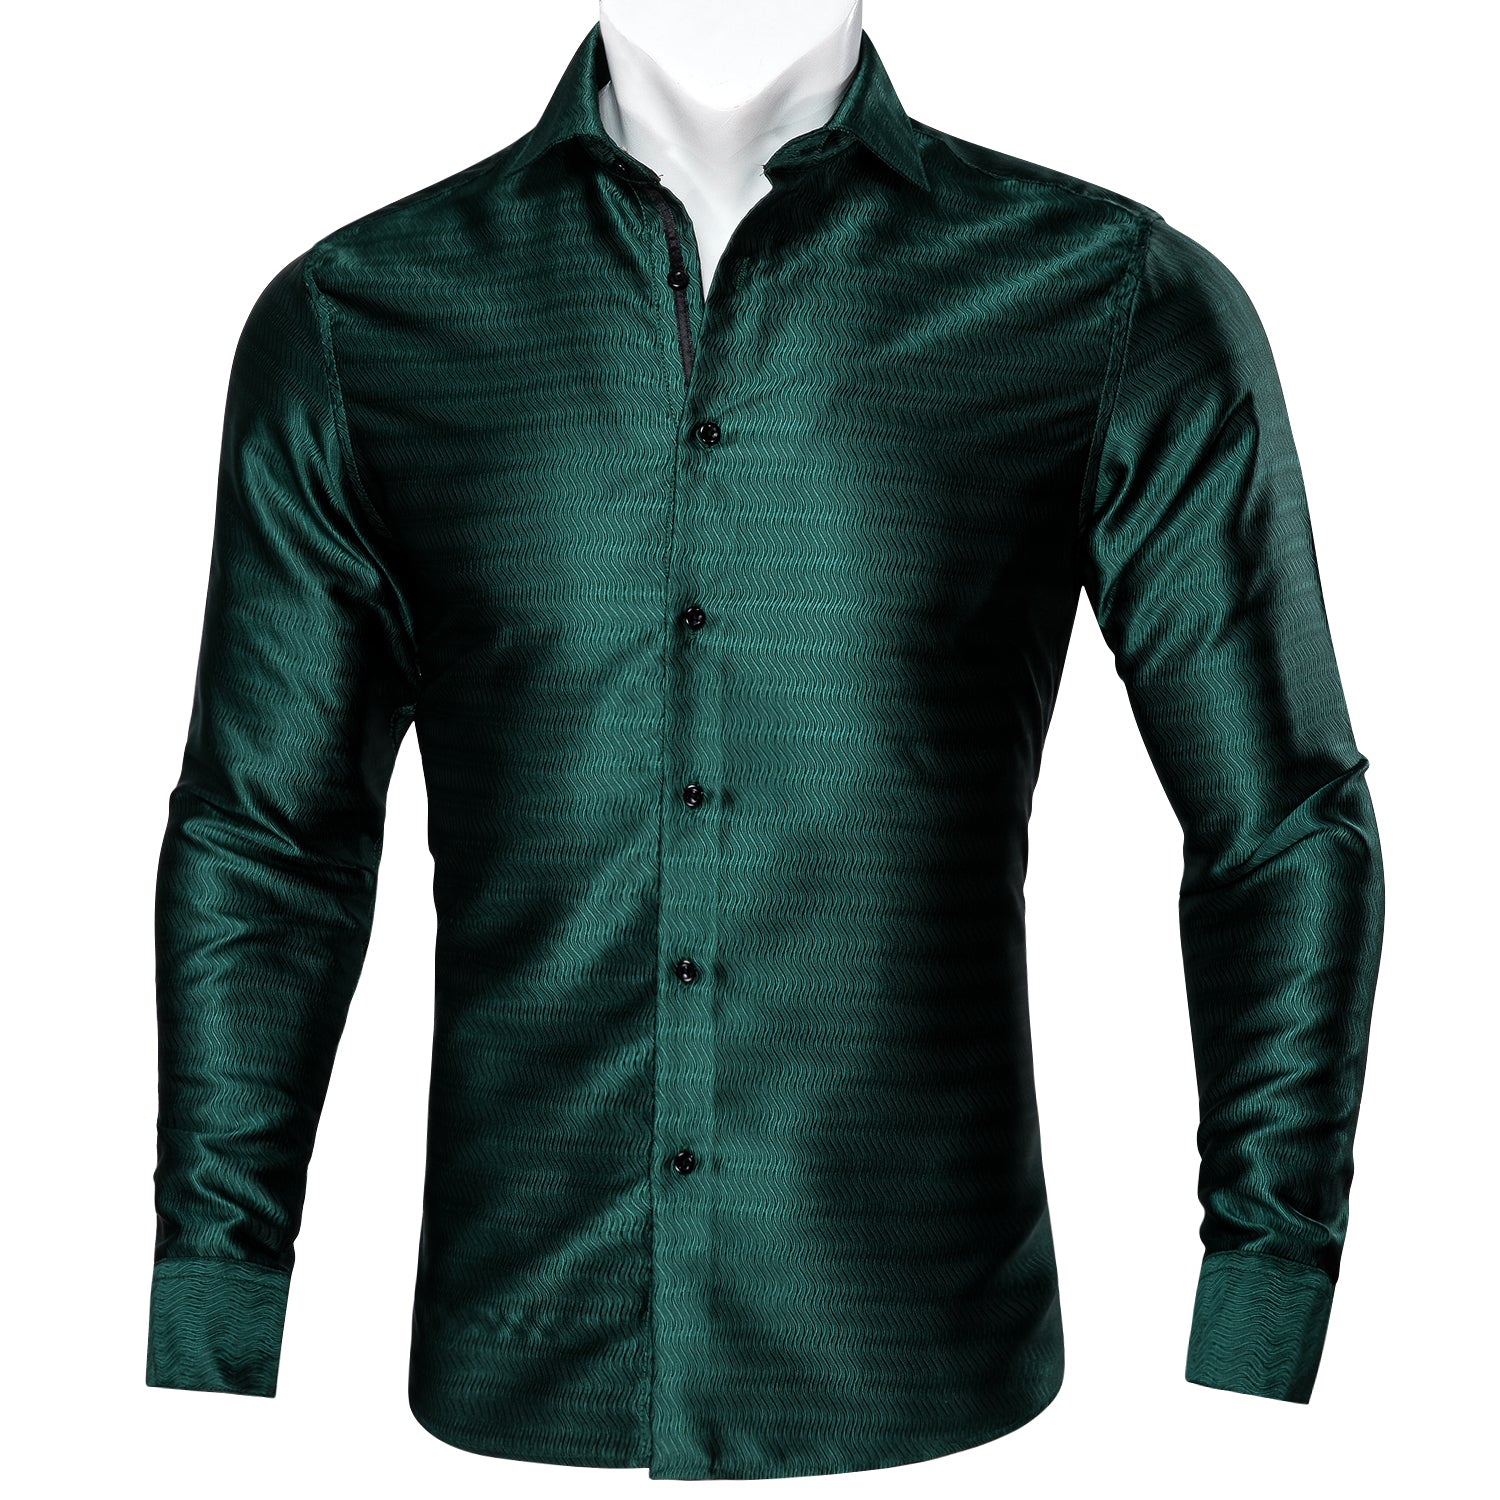 Barry.wang Green Solid Silk Men's Shirt